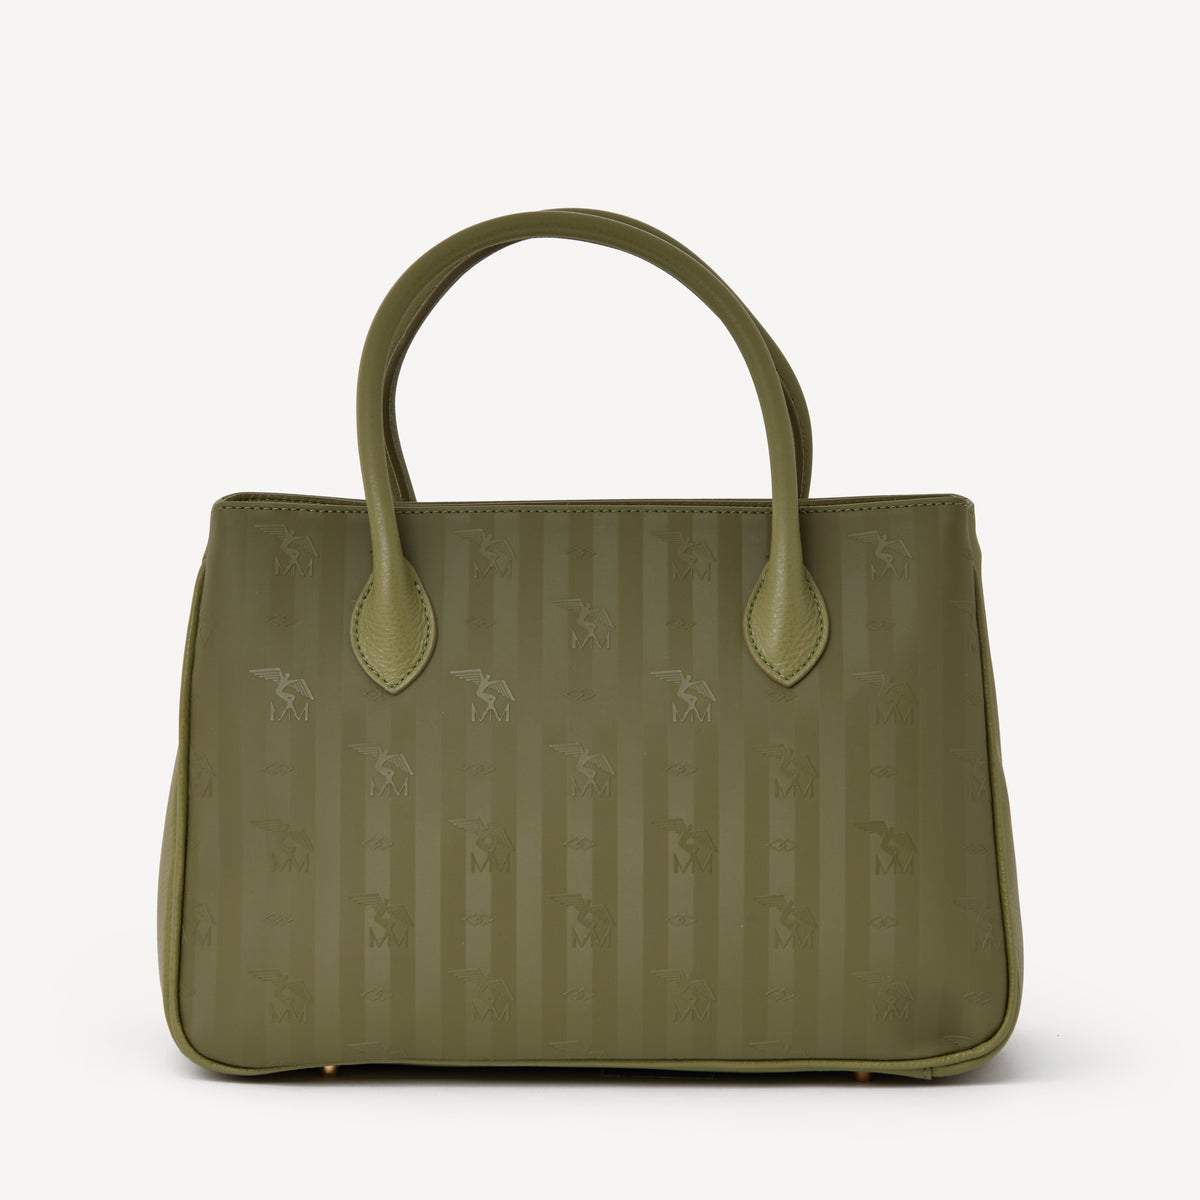 DONAT | Handtasche grün/gold - von hinten 